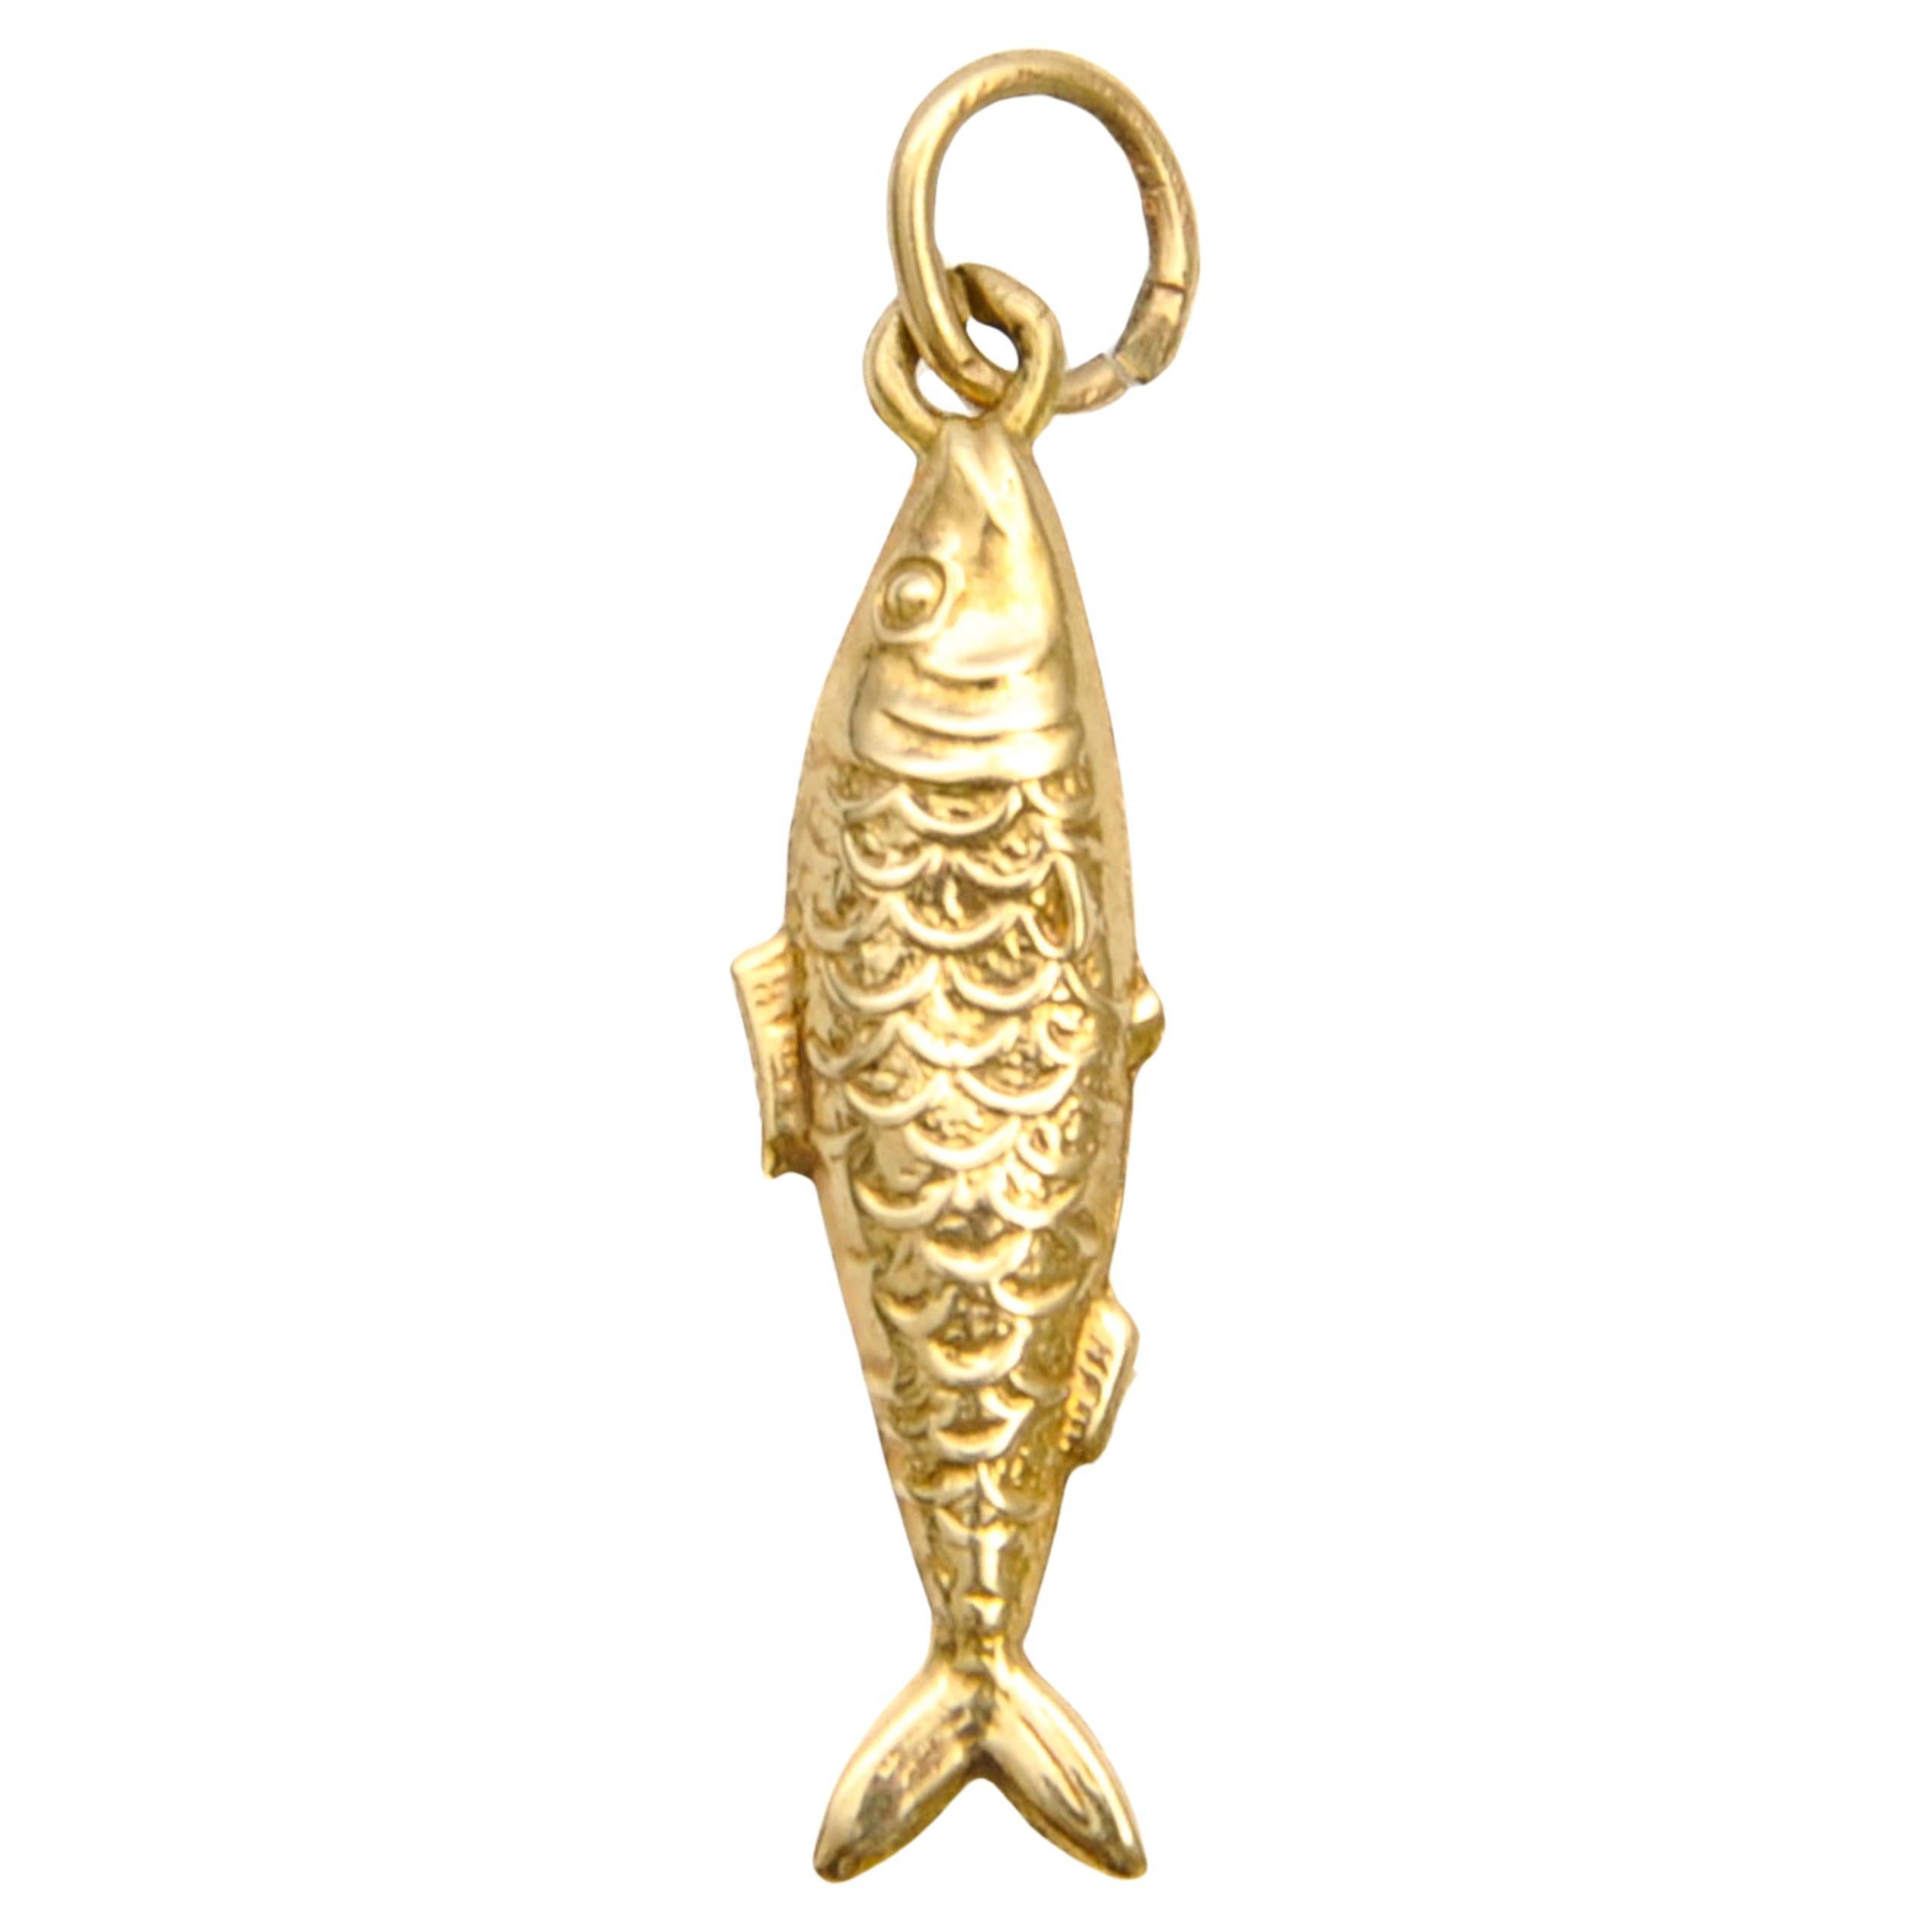 Vintage 9K Gold Zodiac Pisces Fish Charm Pendant